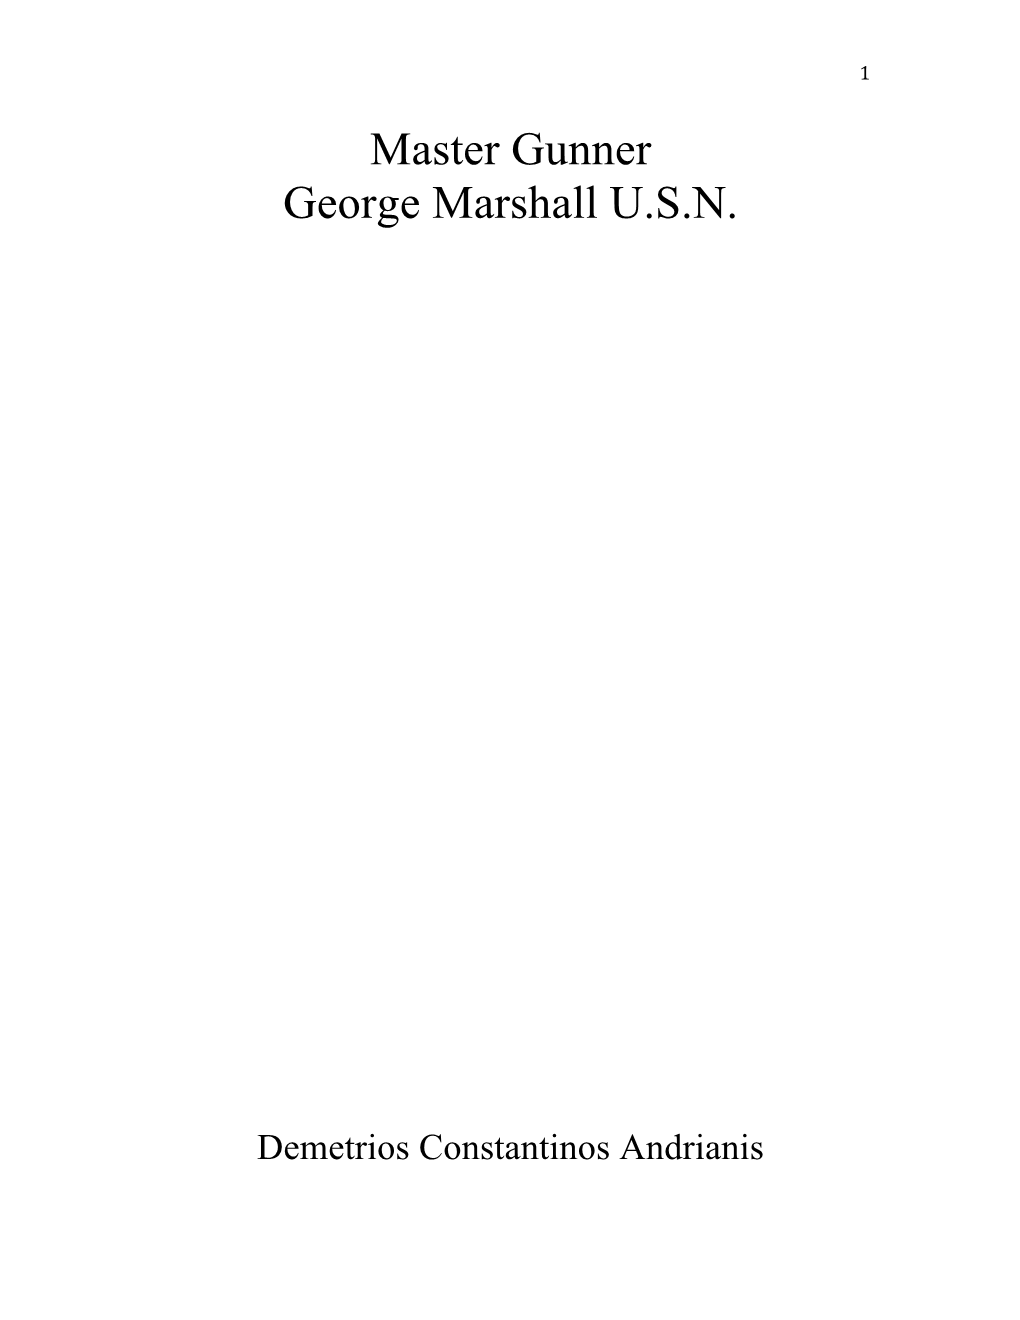 Master Gunner George Marshall U.S.N